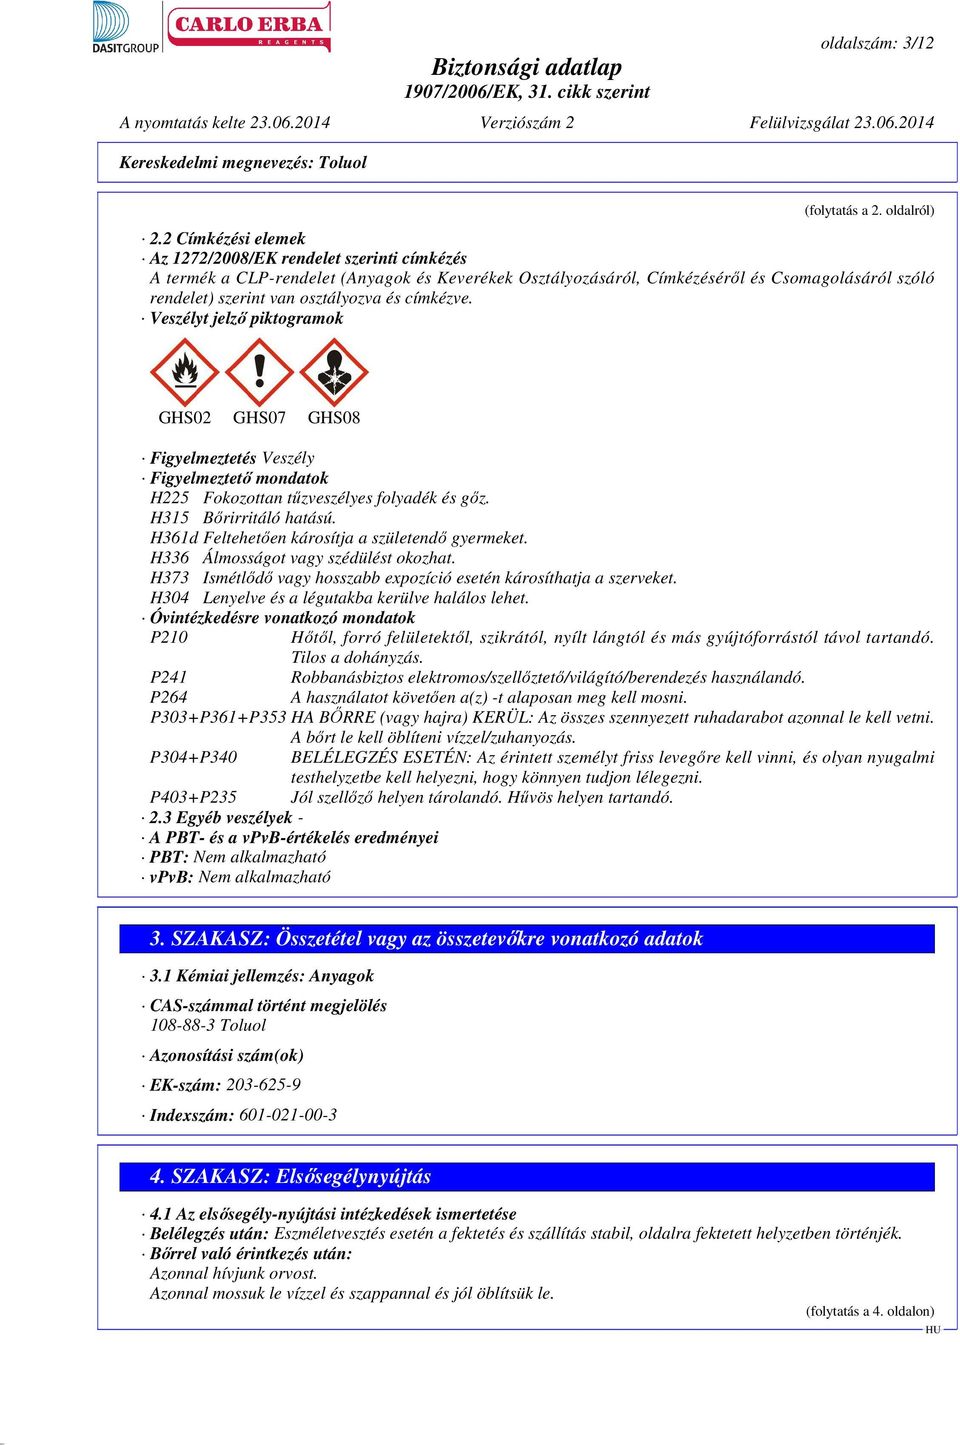 címkézve. Veszélyt jelző piktogramok GHS02 GHS07 GHS08 Figyelmeztetés Veszély Figyelmeztető mondatok H225 Fokozottan tűzveszélyes folyadék és gőz. H315 Bőrirritáló hatású.